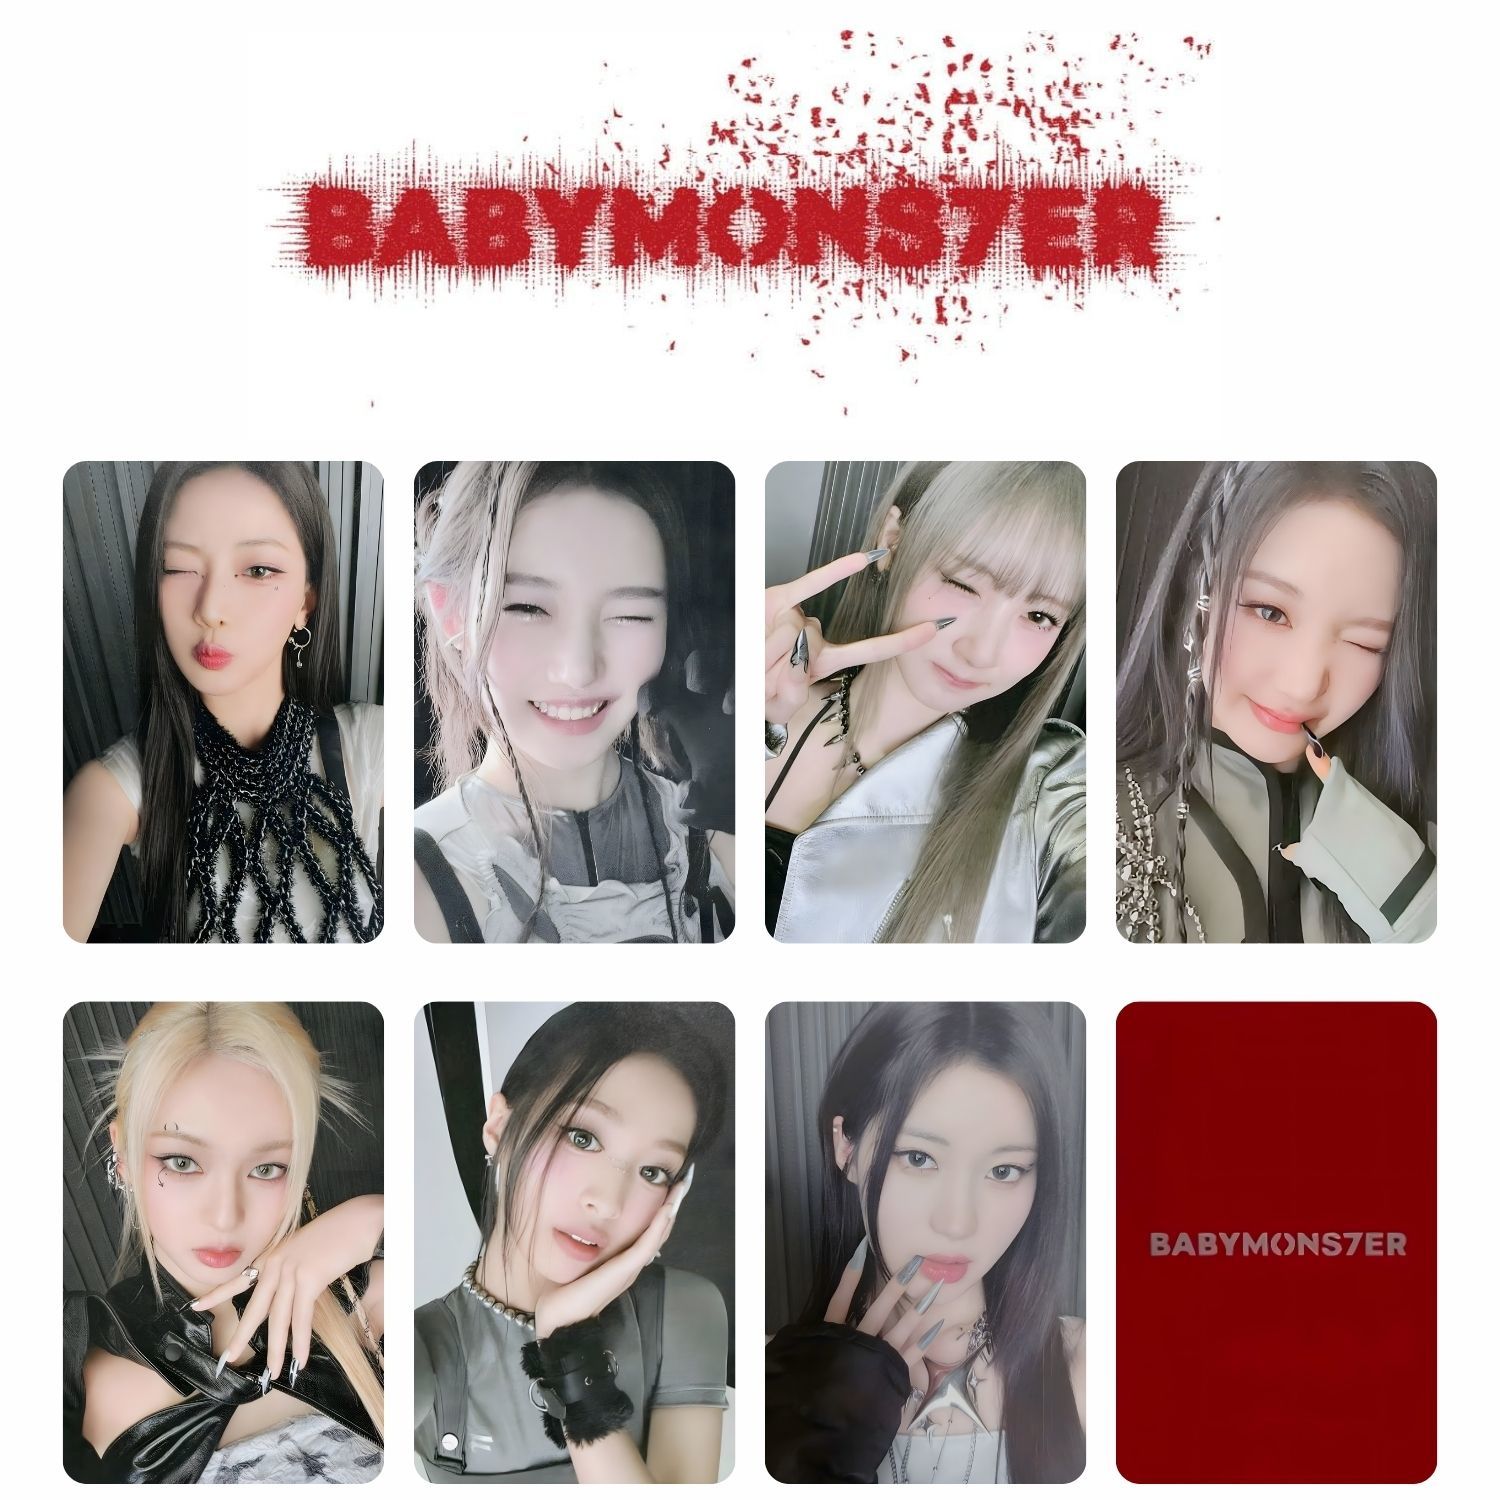 BABYMONSTER '' Babymons7er '' Tag Set 2 PC